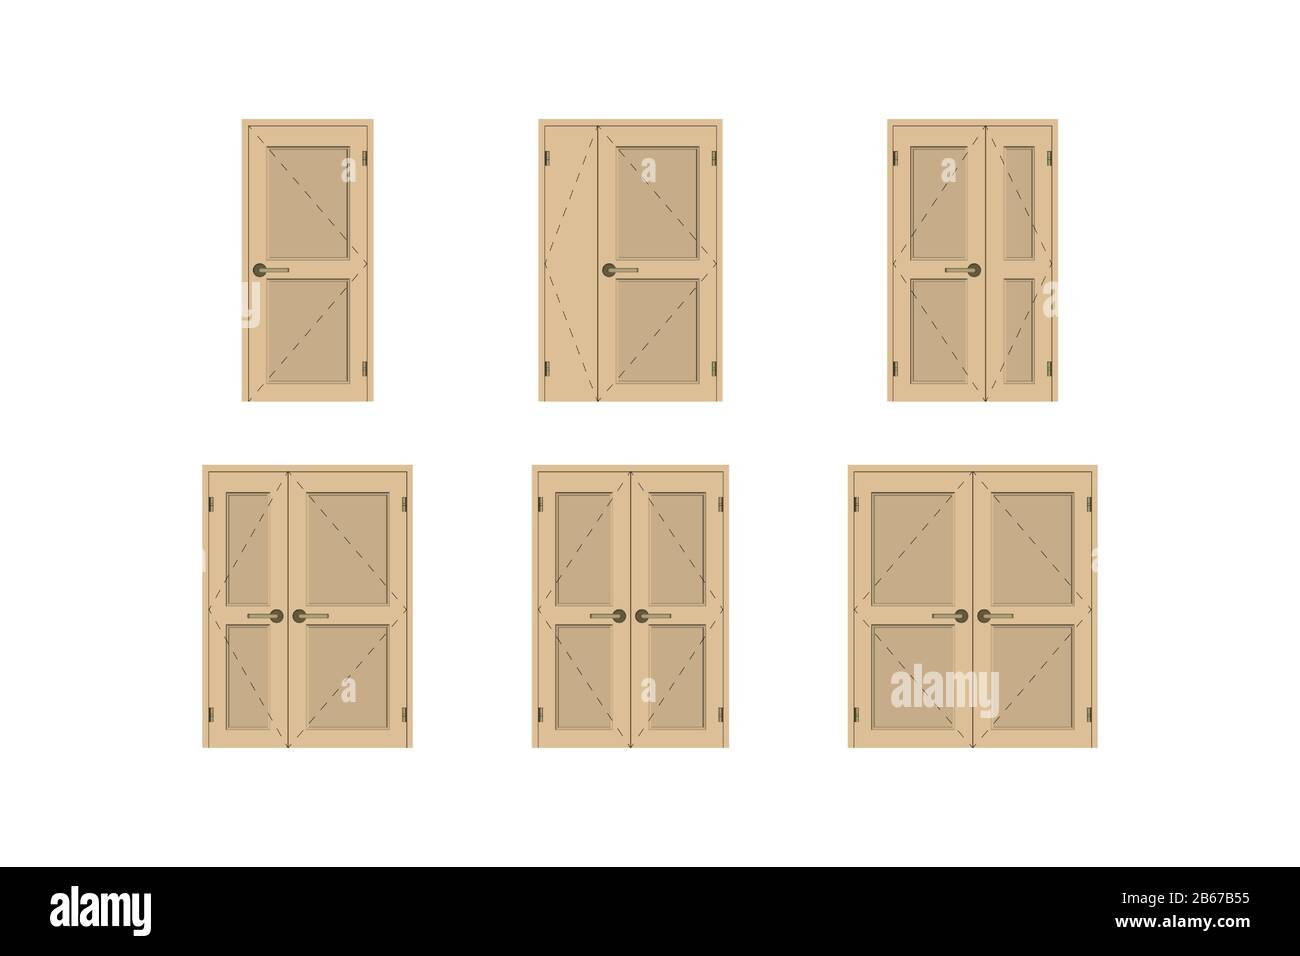 Wooden doors set. Design interior. Vector illustration. Stock Vector